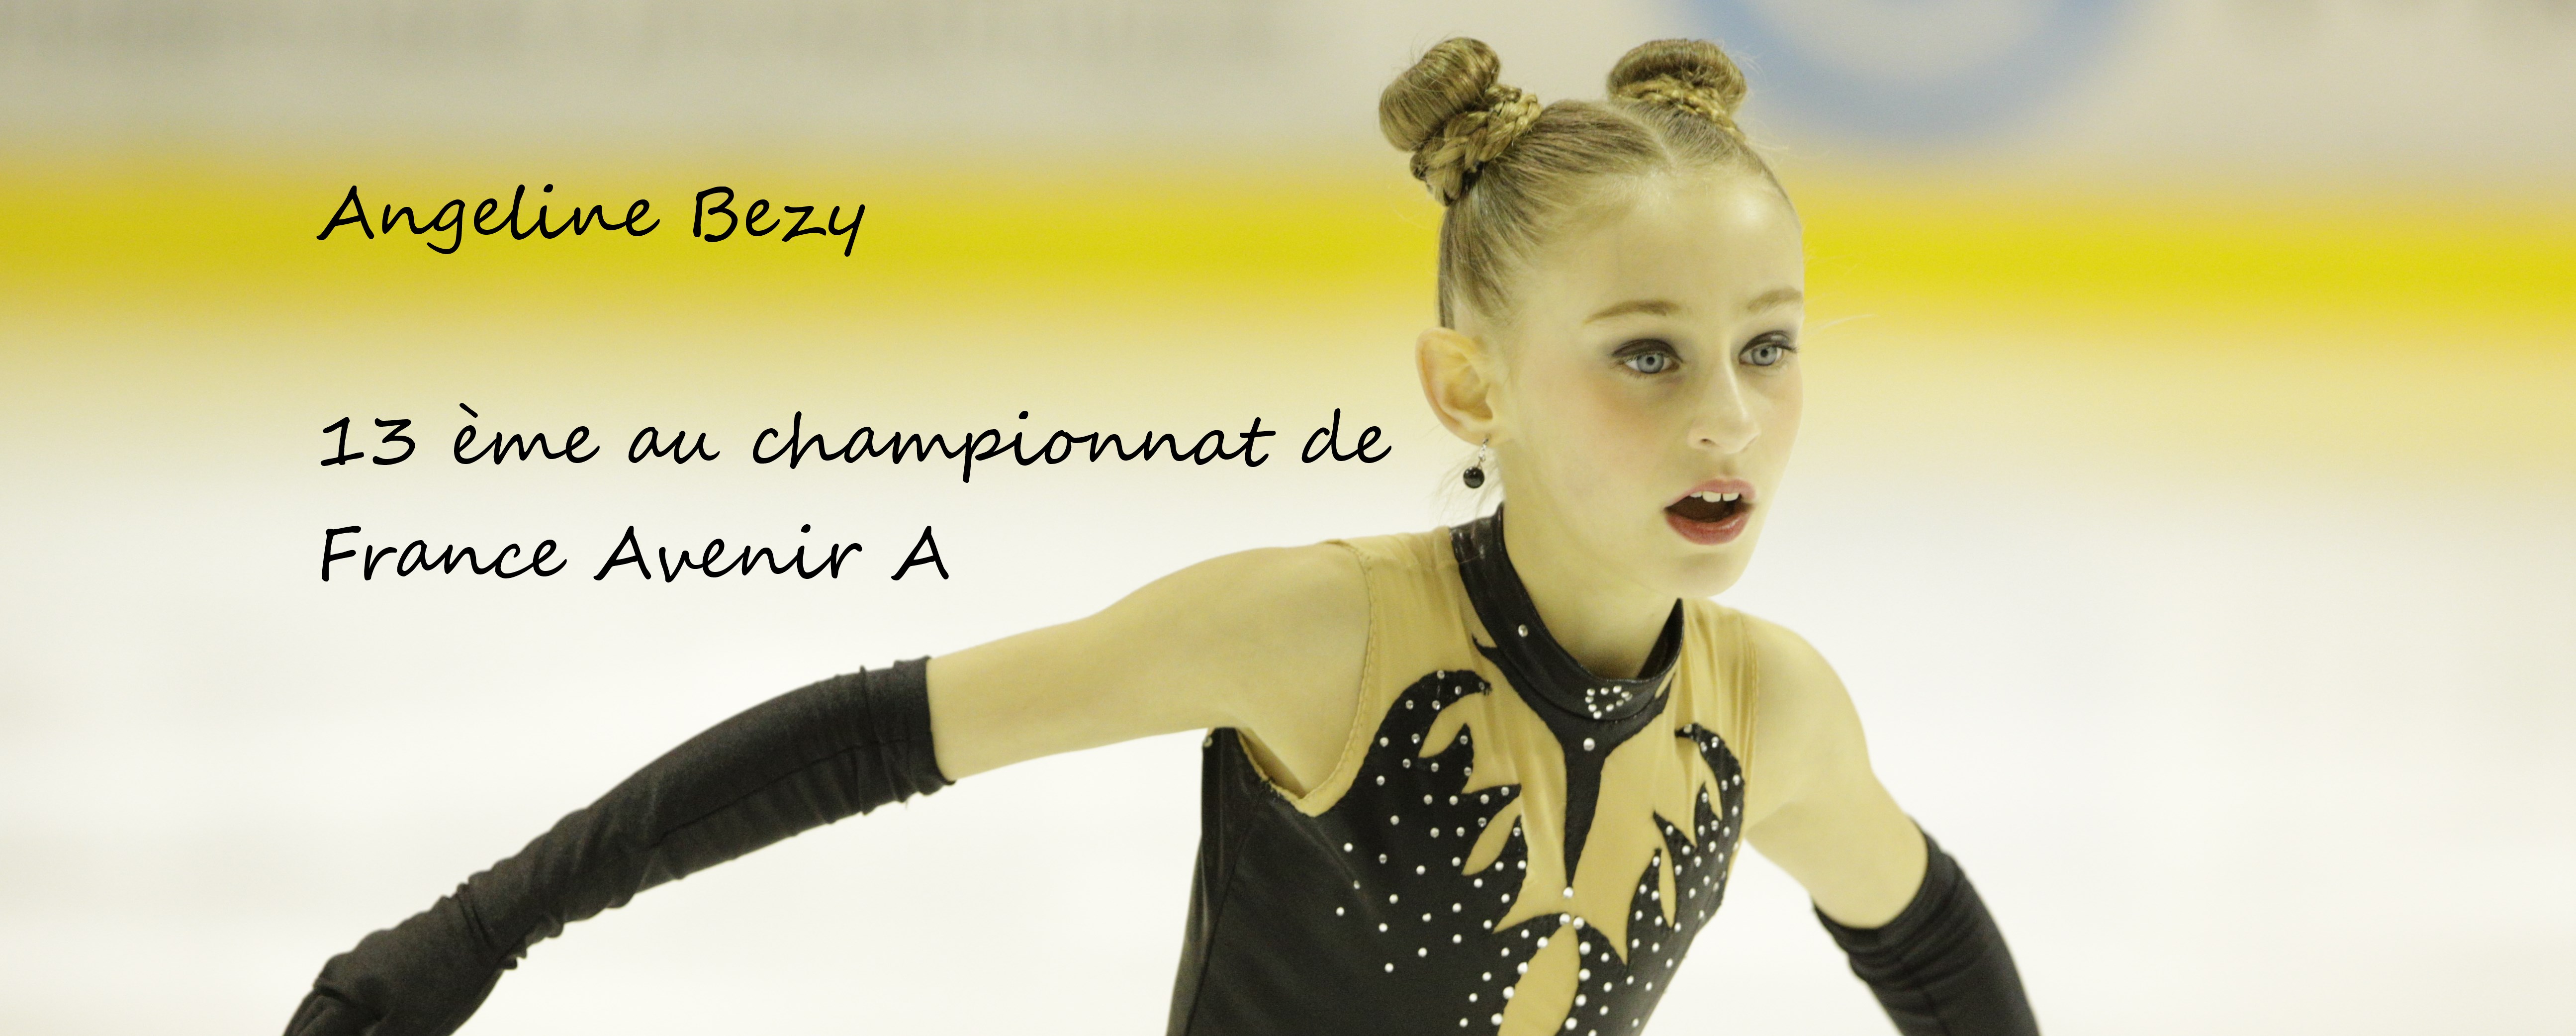 Angeline Bezy 13 ème des championnats de France Avenir A